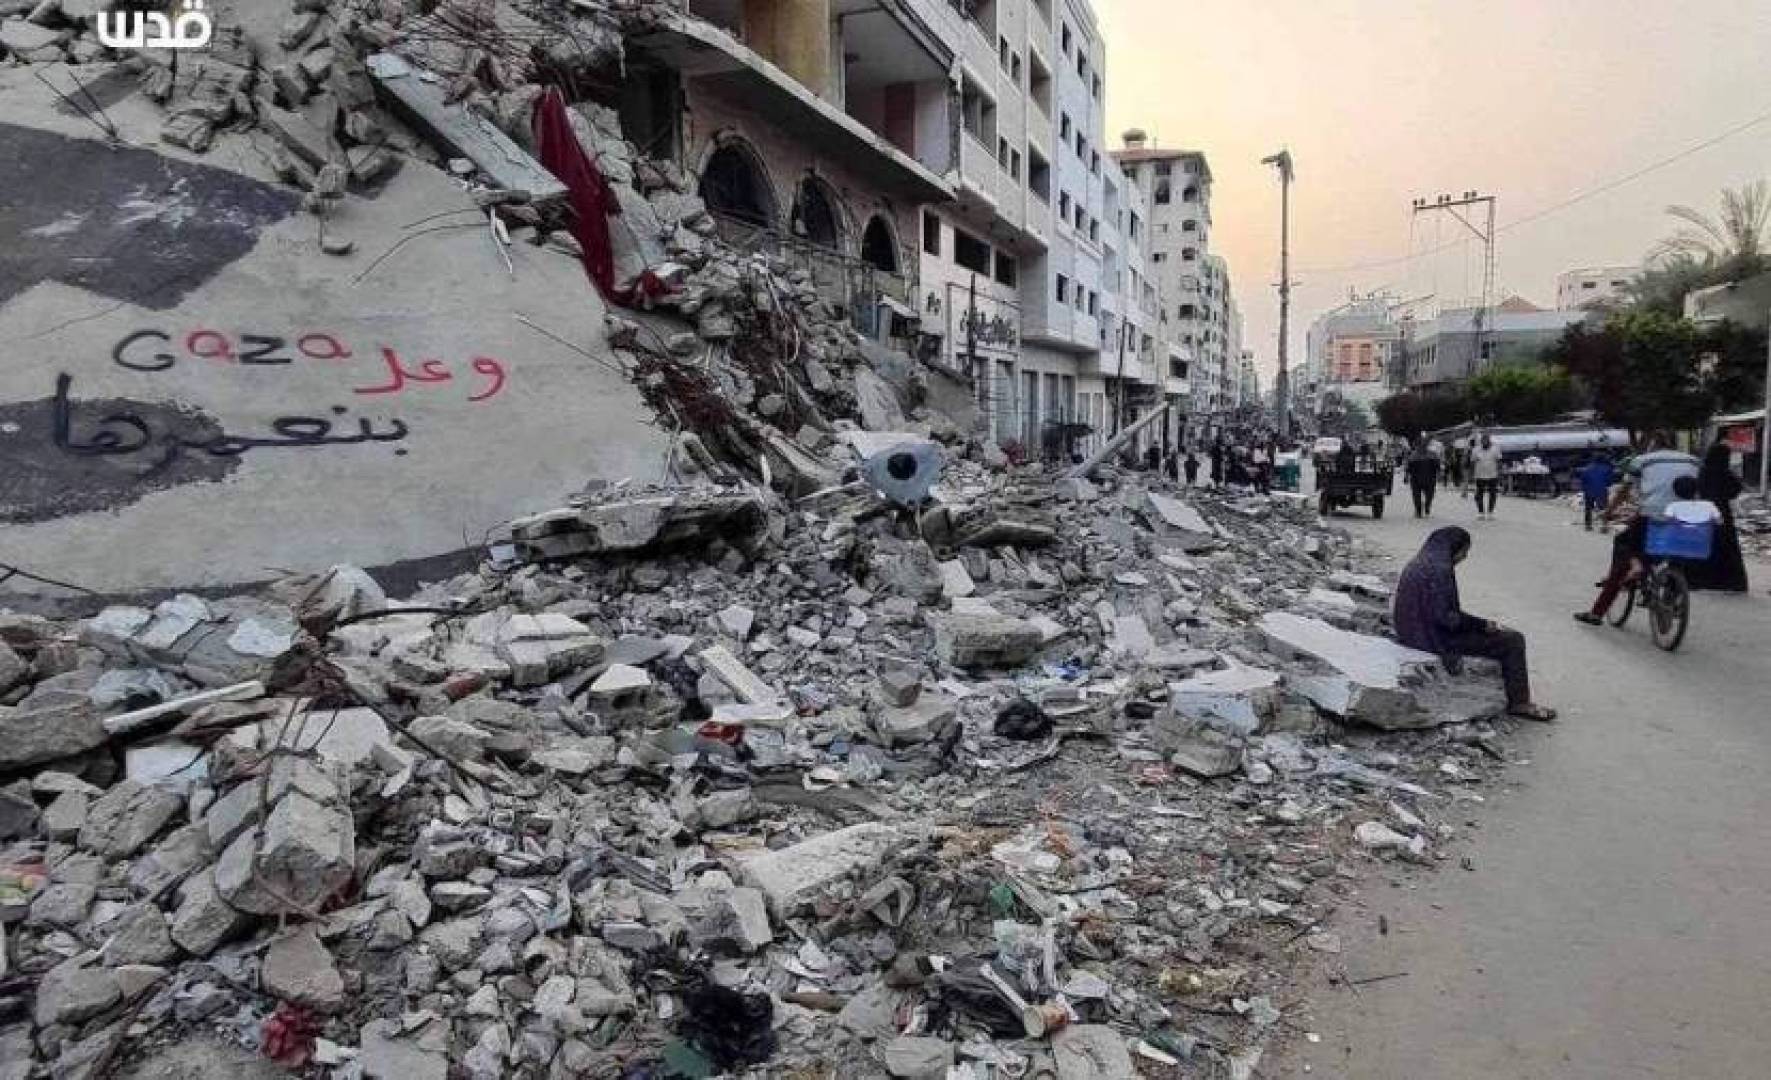 ليلة صعبة عاشها سكان قطاع غزة: أحزمة نارية لم تتوقف ومجازر في رفح والنصيرات والبريج